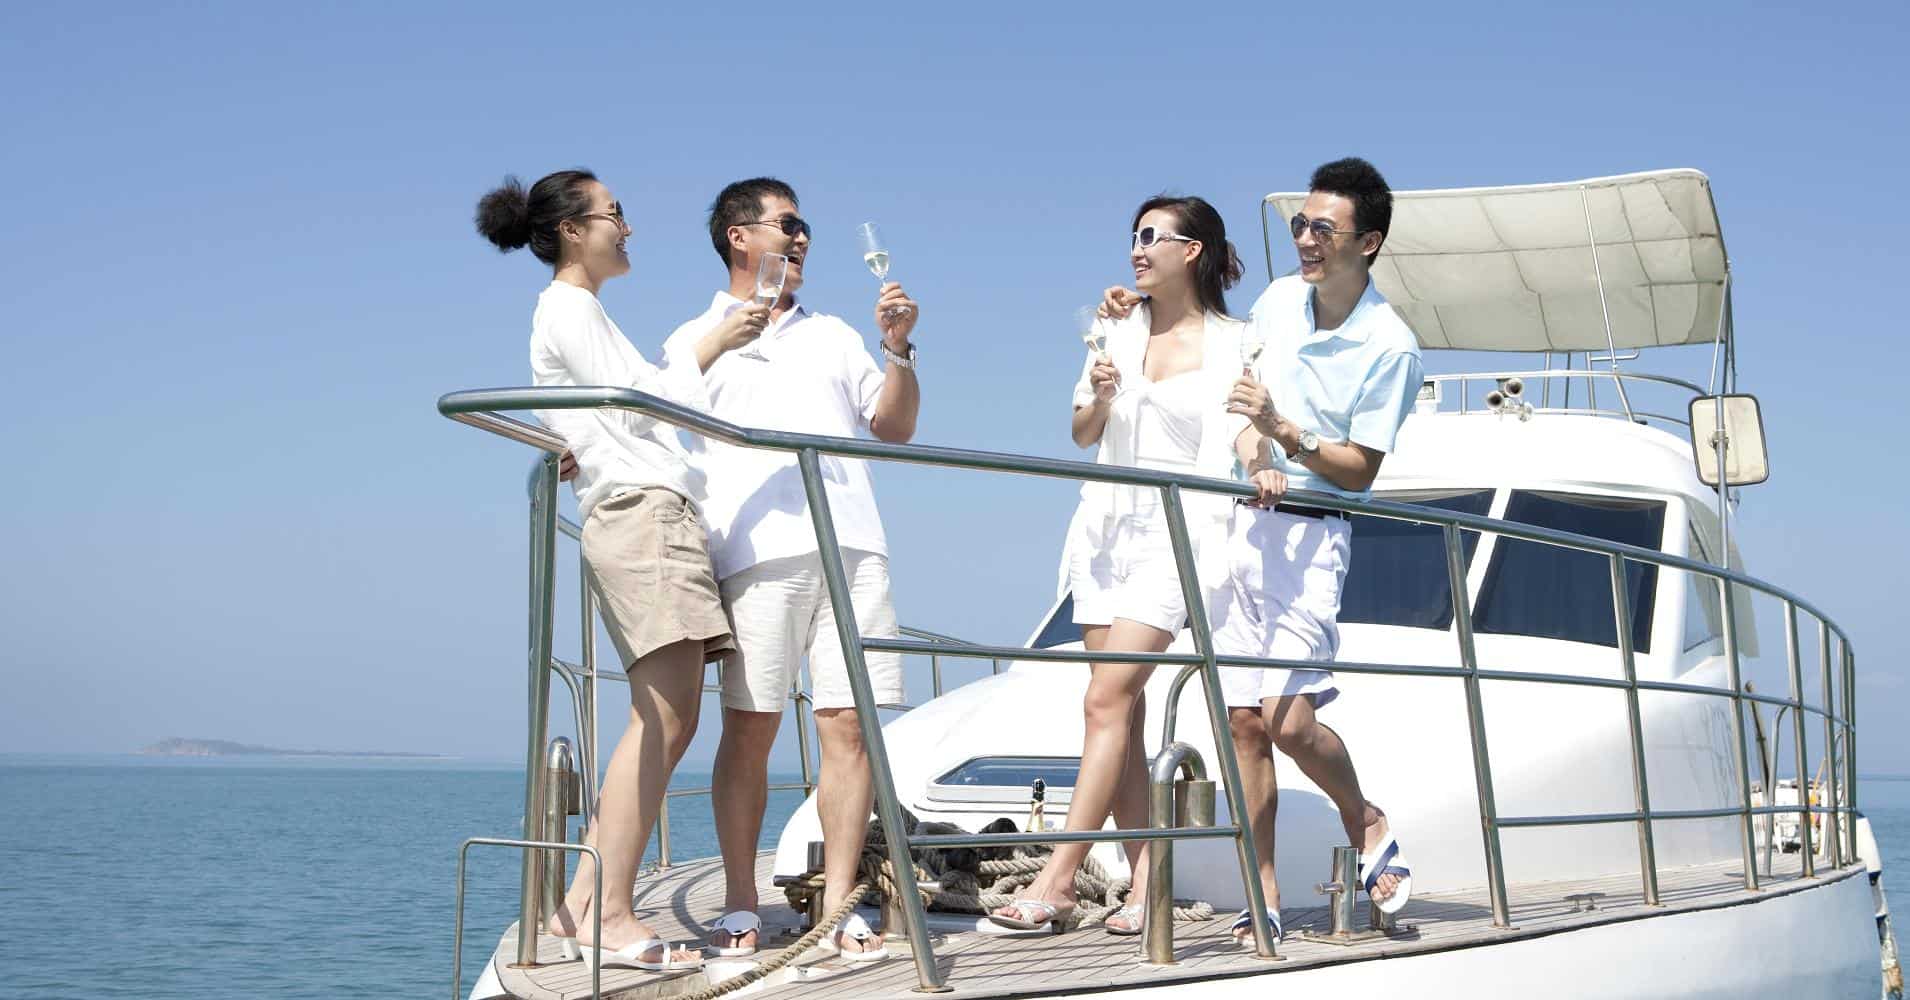 Î‘Ï€Î¿Ï„Î­Î»ÎµÏƒÎ¼Î± ÎµÎ¹ÎºÏŒÎ½Î±Ï‚ Î³Î¹Î± Chinese millennials prefer to travel Australia